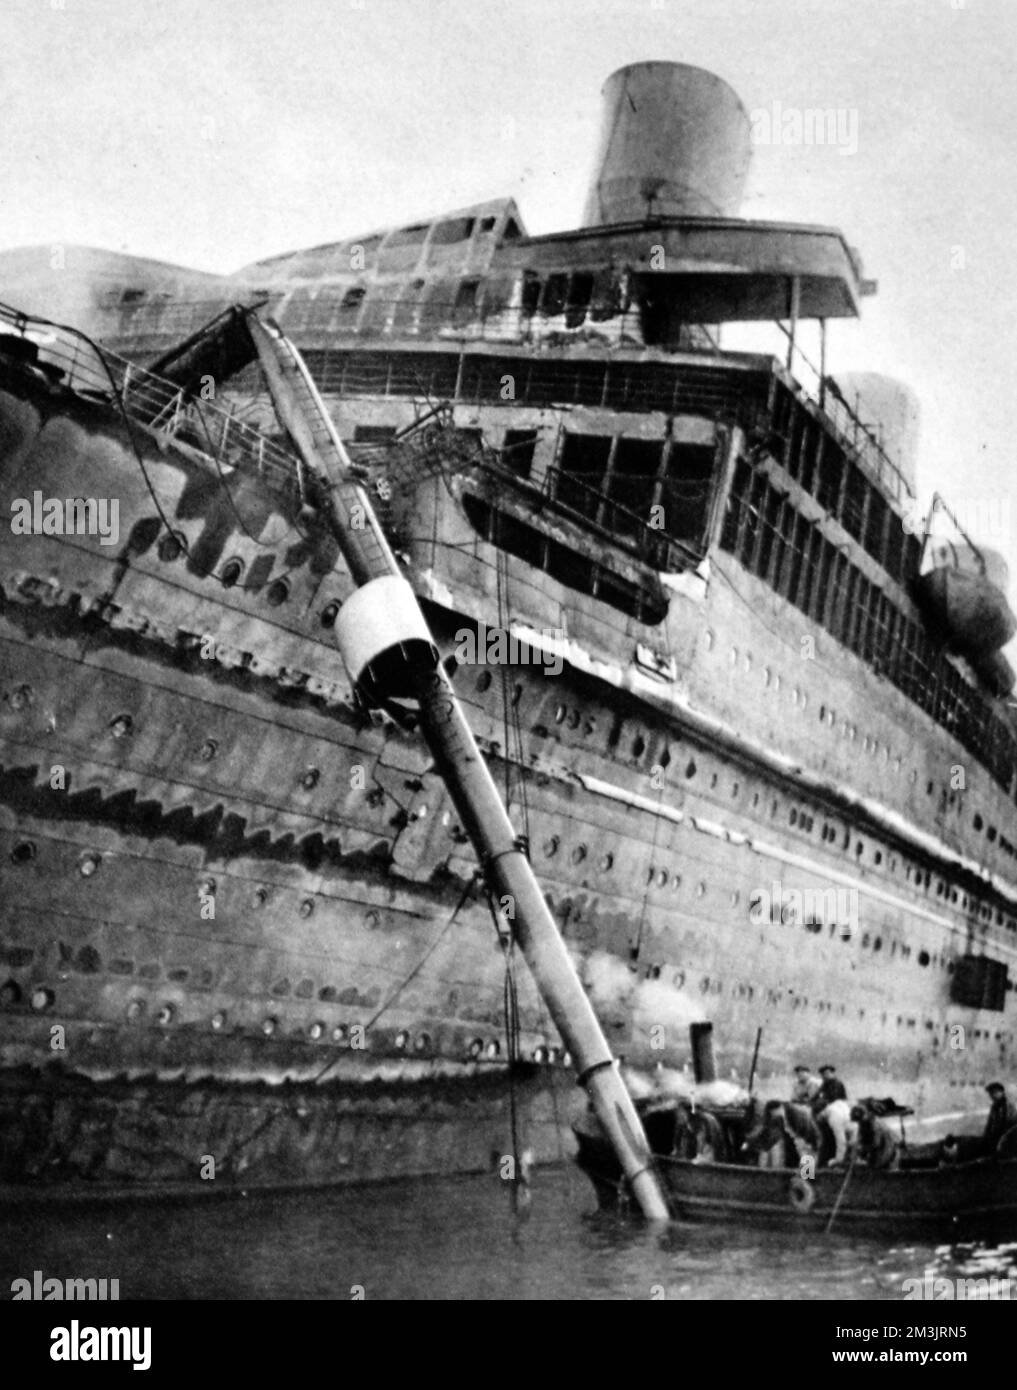 Le paquebot brûlé, l'Atlantique, a été introduit avec succès dans le port de Cherbourg. L'incendie a éclaté dans les premières heures du 4th janvier 1933, à 6am l'ordre d'abandon de navire a été donné. Le paquebot n'avait pas de passagers à bord, seulement l'équipage, beaucoup ont été pris dans le bateau à vapeur britannique, Ford Castle. Un canot de sauvetage a été jeté dans la mer, noyant certains des occupants. Pendant des heures, la doublure brûlée s'est dissipée, la chaleur extraordinaire a empêché les bateaux de clavetage de s'approcher. Finalement, un navire français a sécurisé une ligne et l'a amenée à Cherbourg. Date: 1933 Banque D'Images